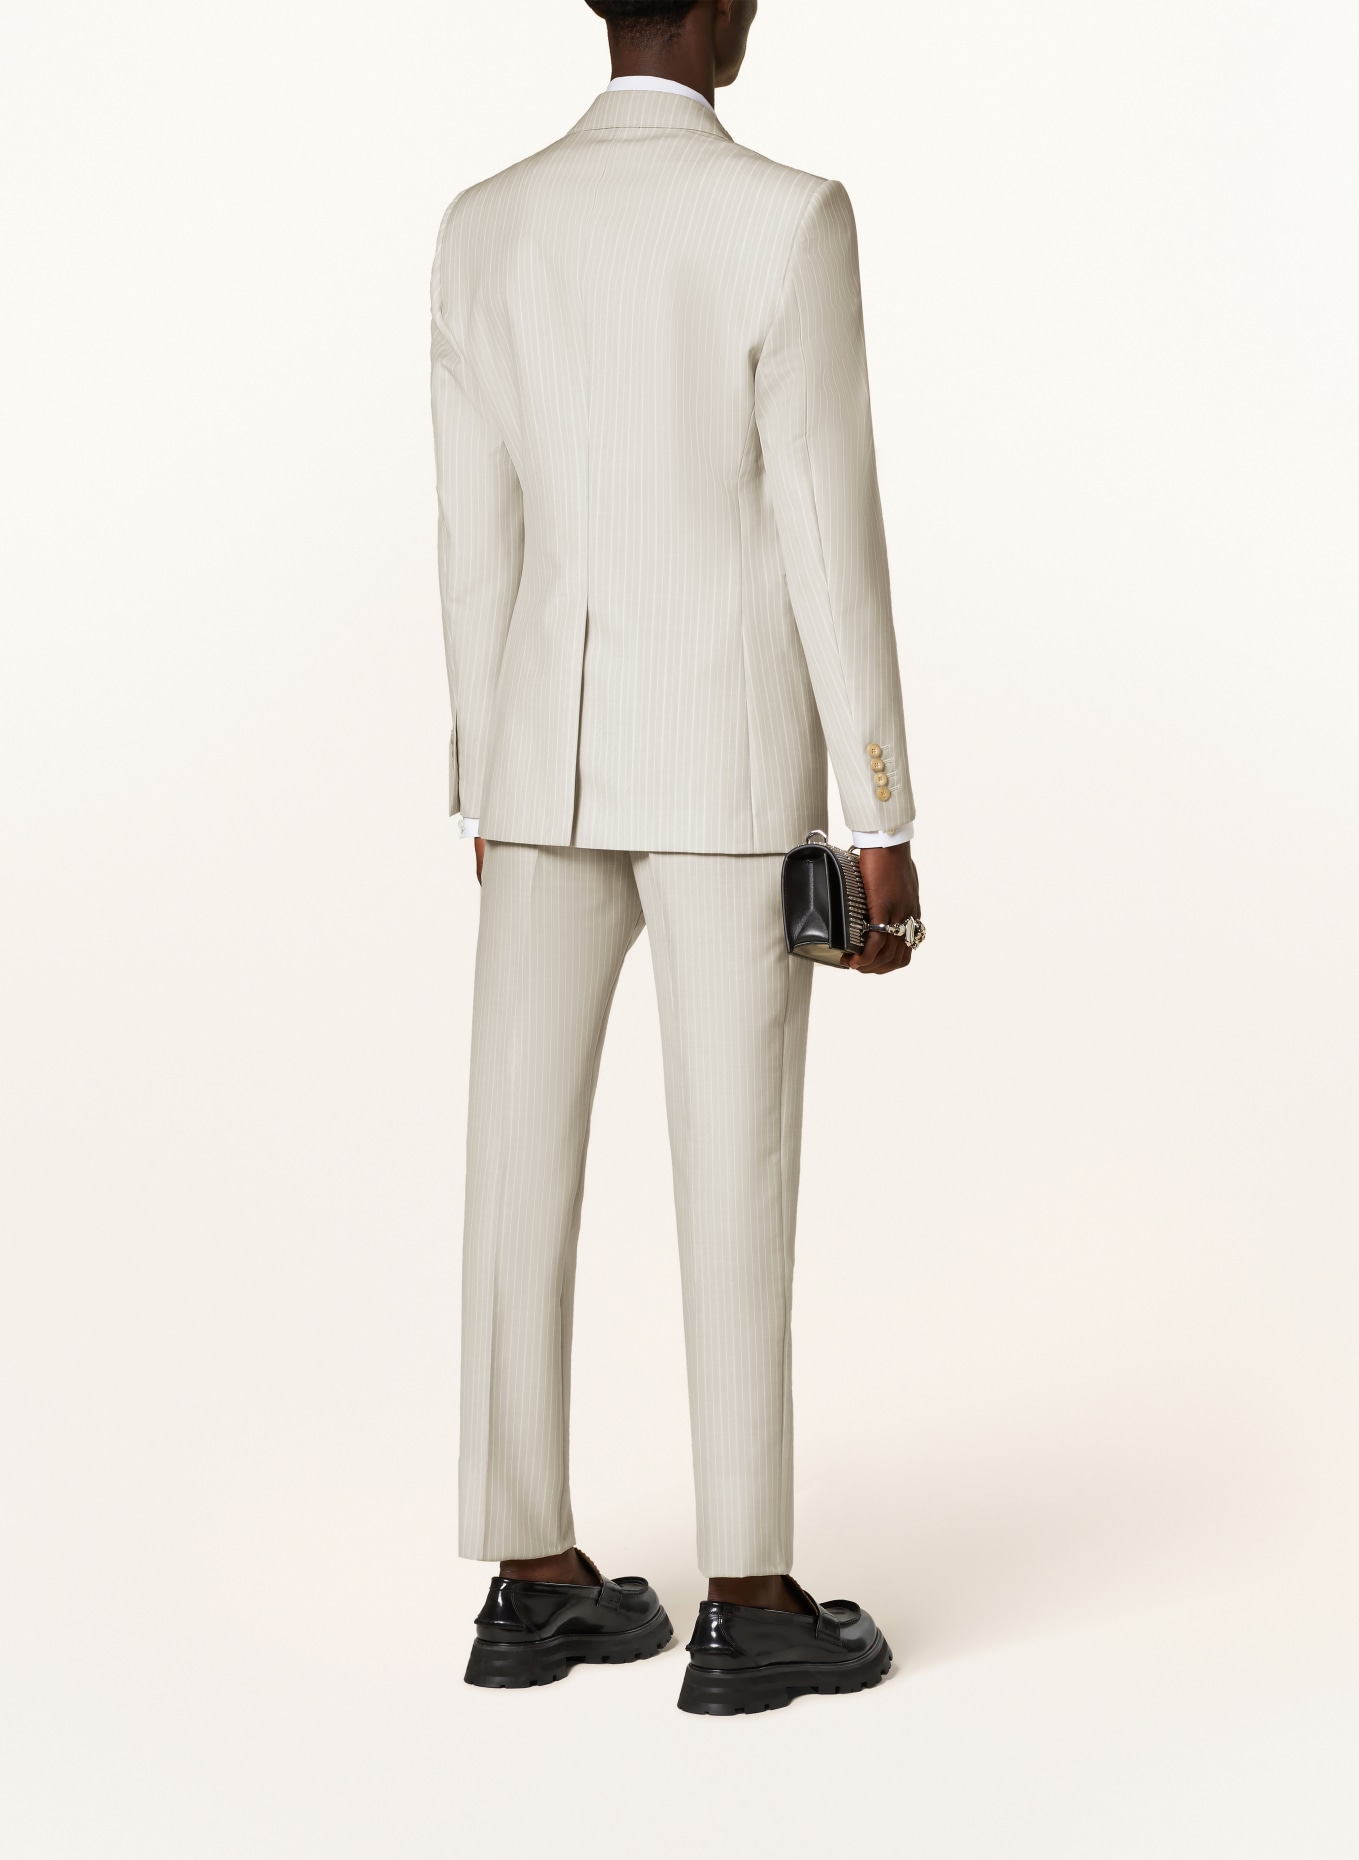 Alexander McQUEEN Suit jacket regular fit, Color: 1196 ICE GREY (Image 3)